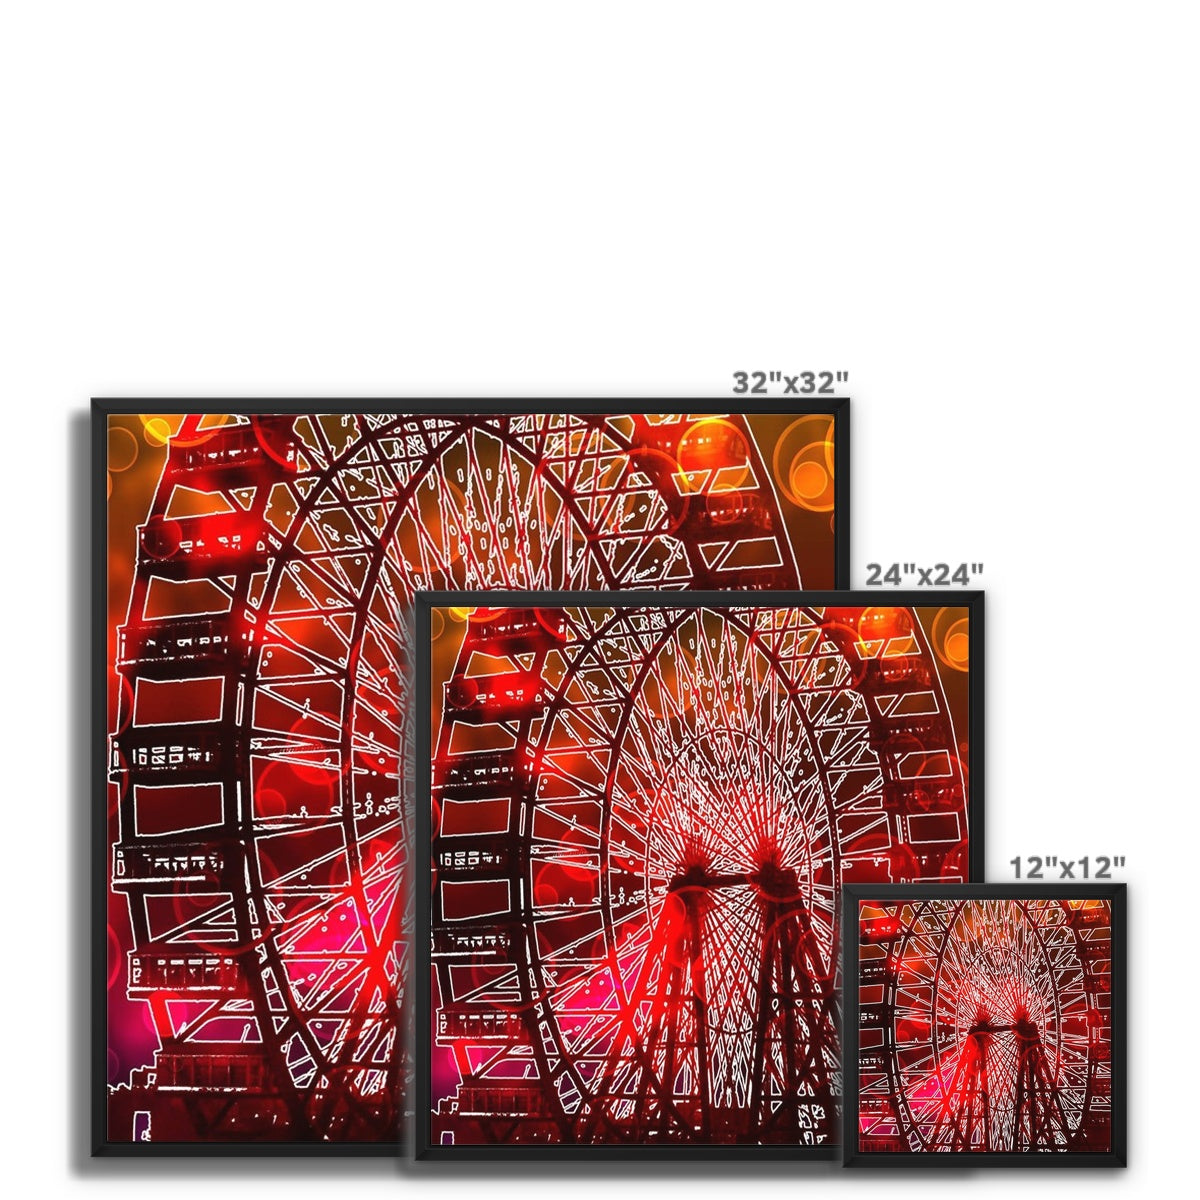 Bokeh Light Ferris Wheel Framed Canvas